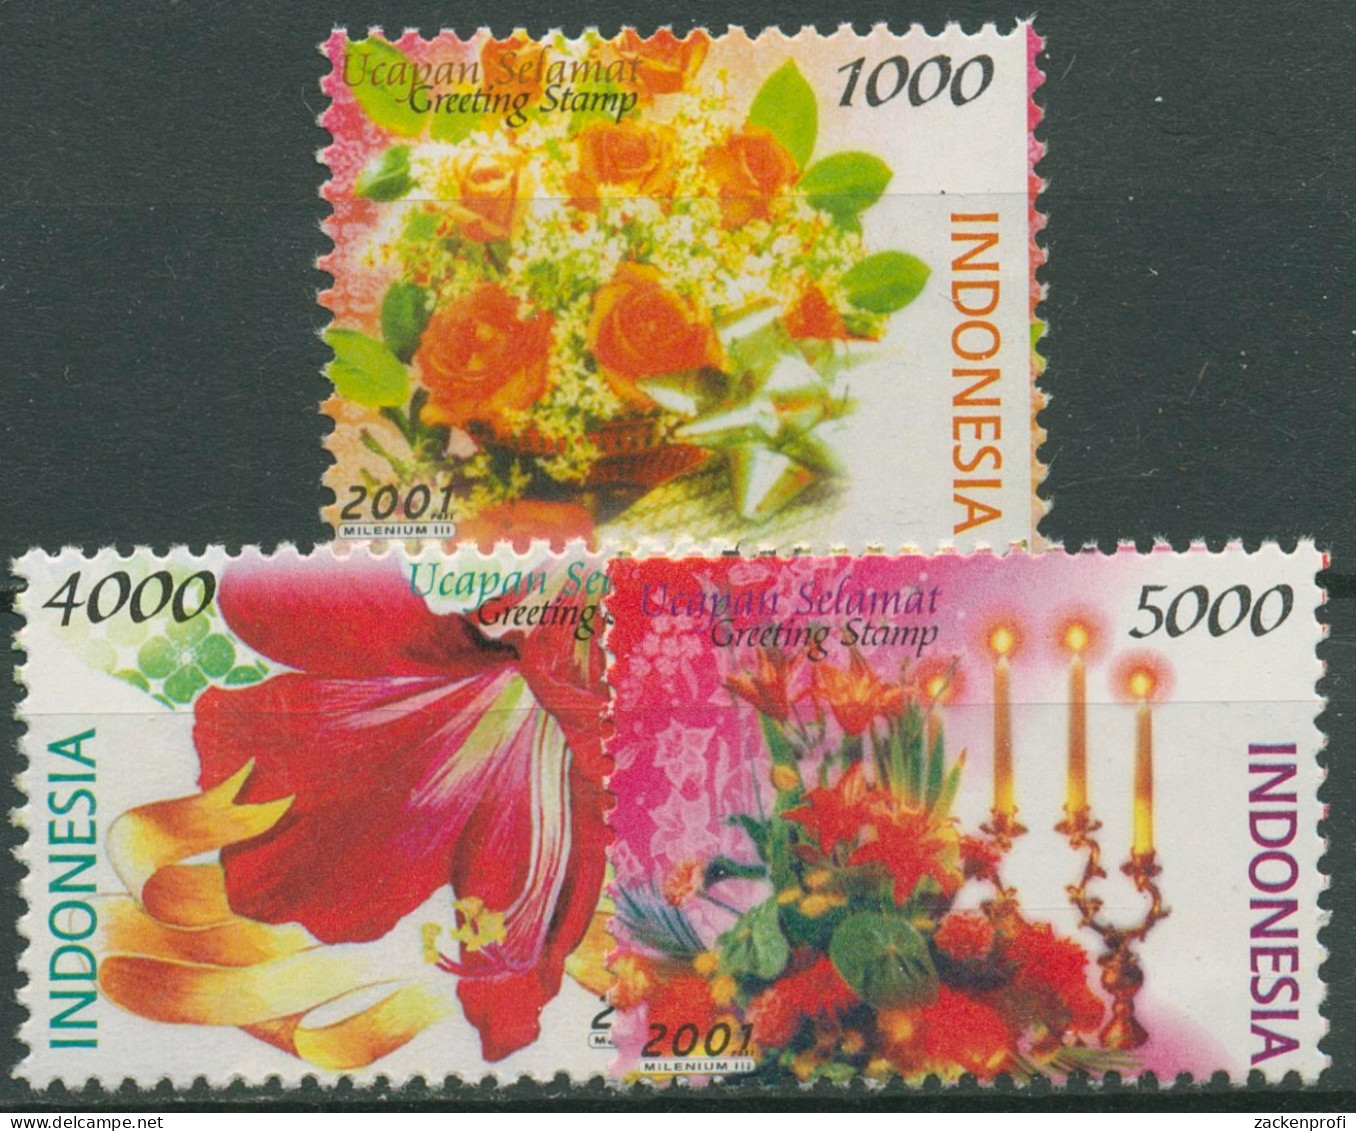 Indonesien 2001 Grußmarken Blumen Rosen Amaryllis 2103+2106/07 Postfrisch - Indonesië